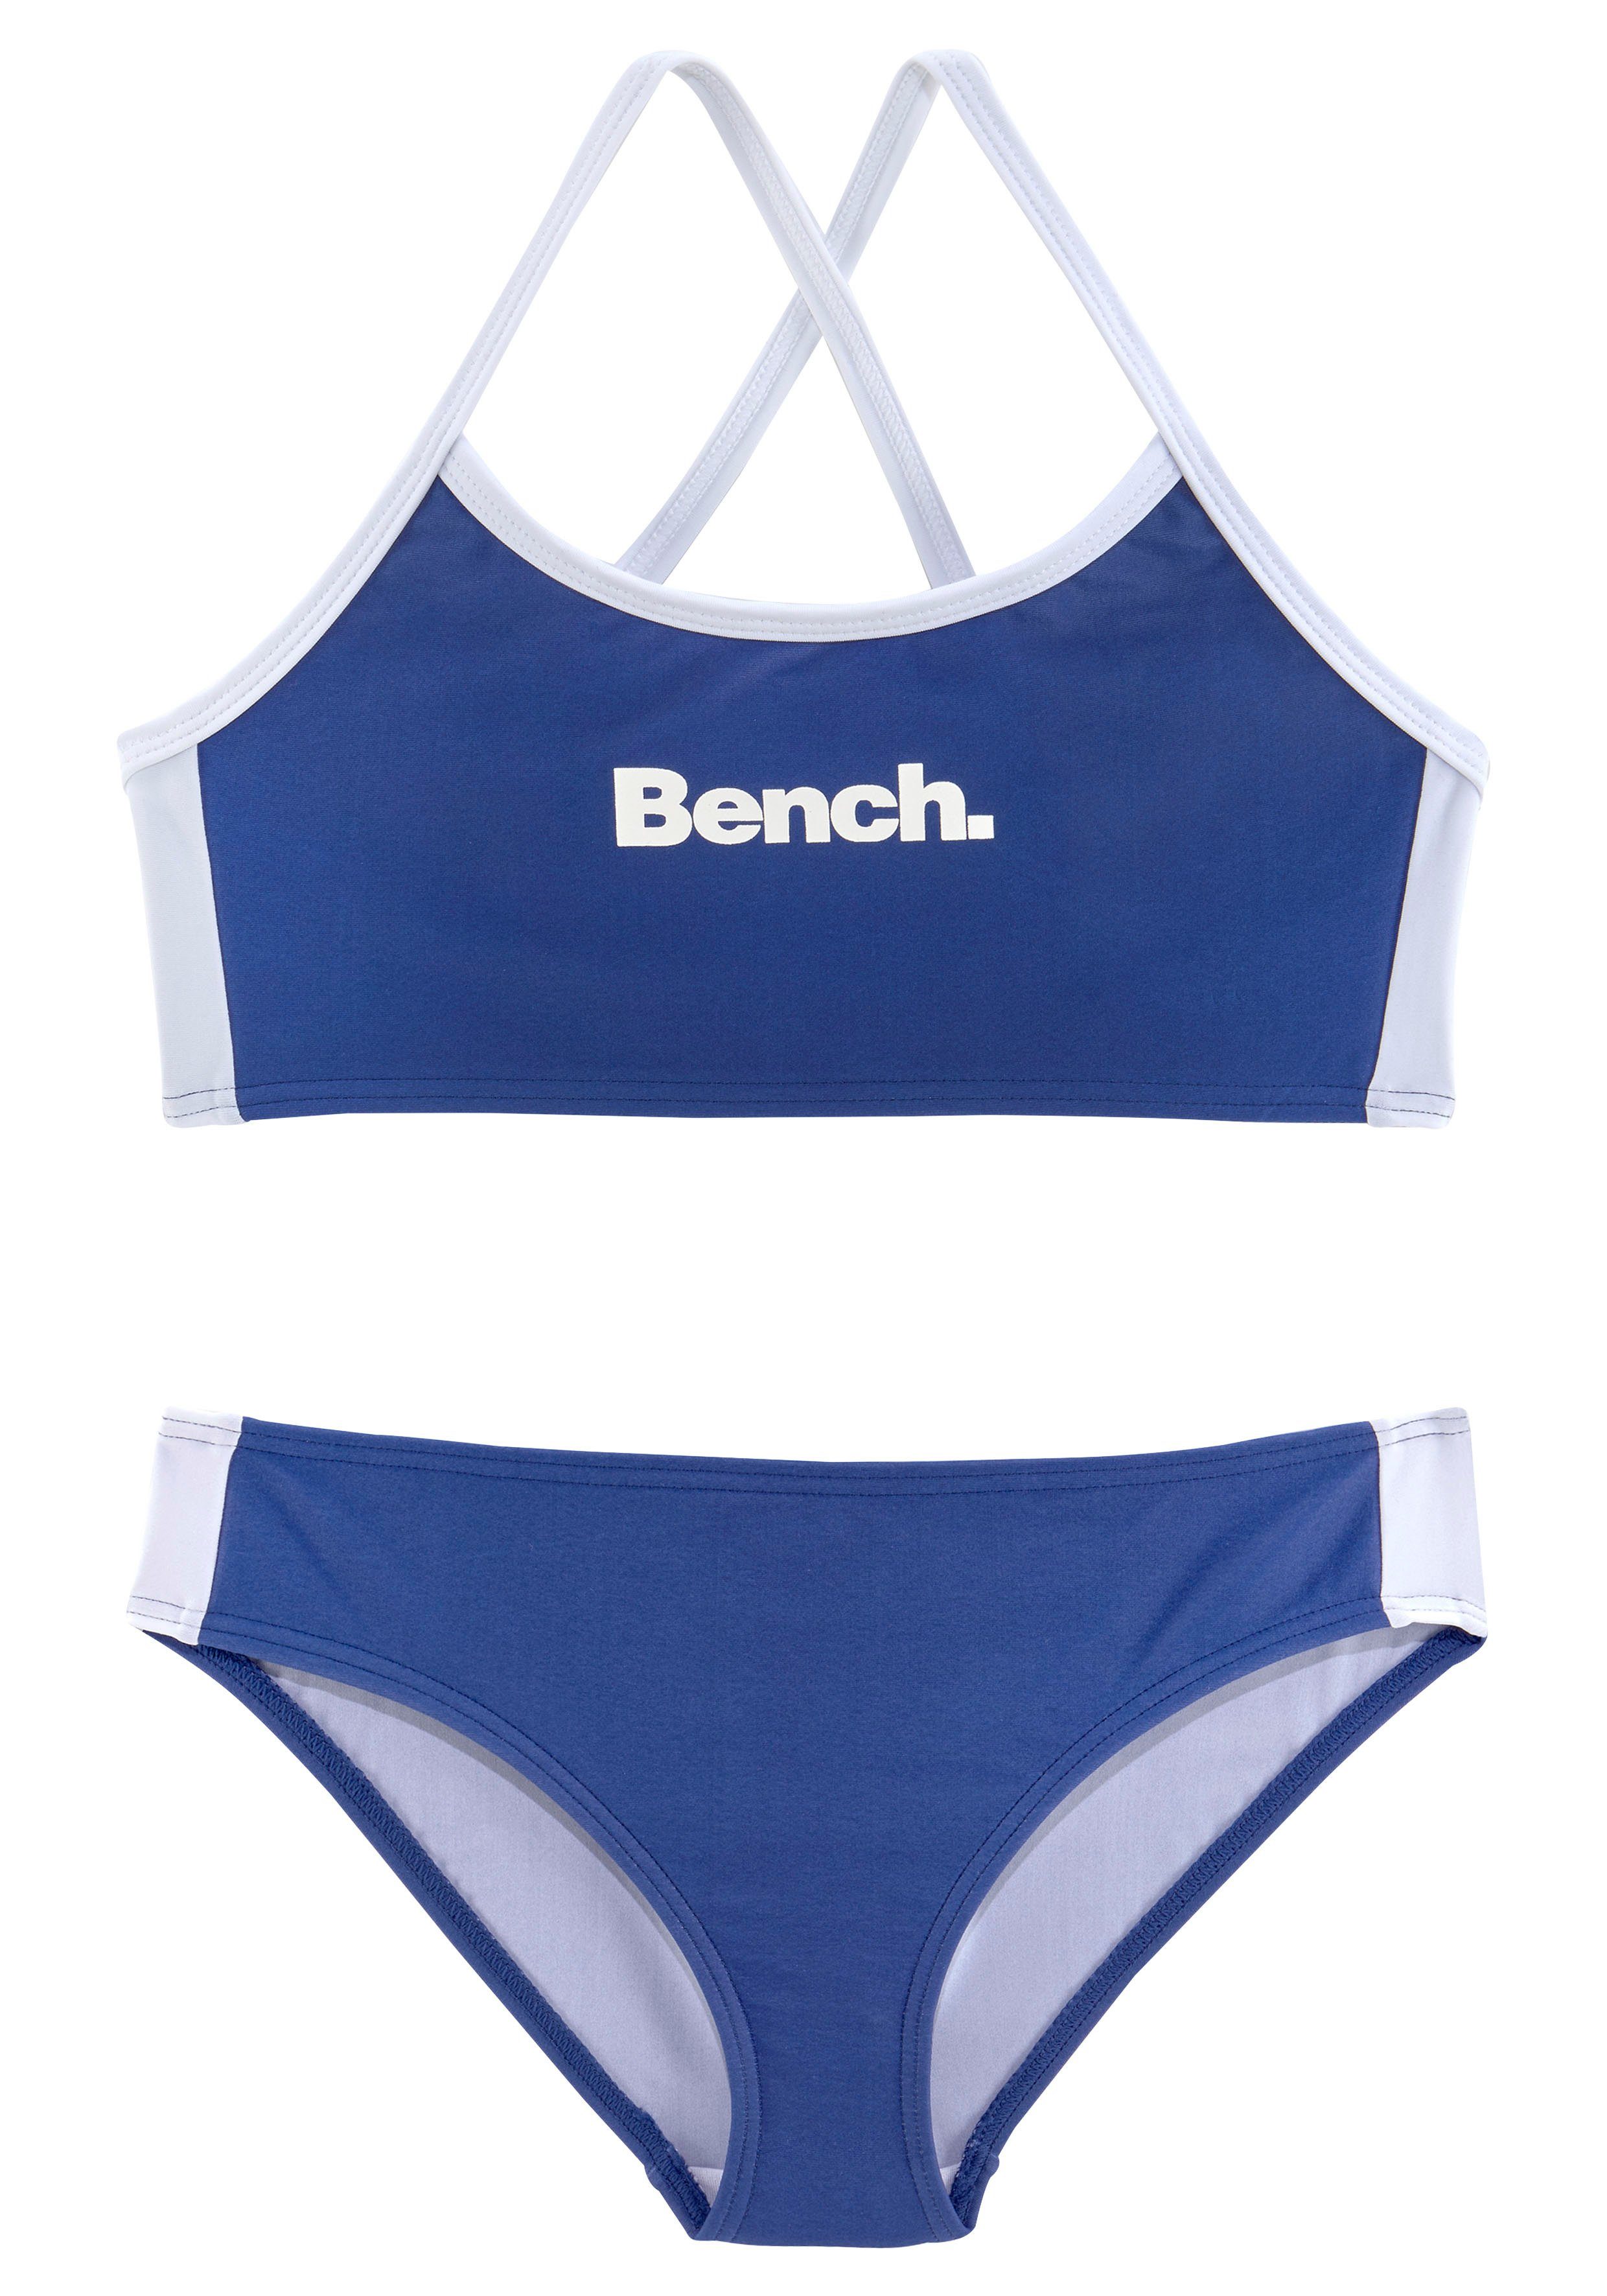 Bench. Bustier-Bikini mit gekreuzten Trägern blau-weiß